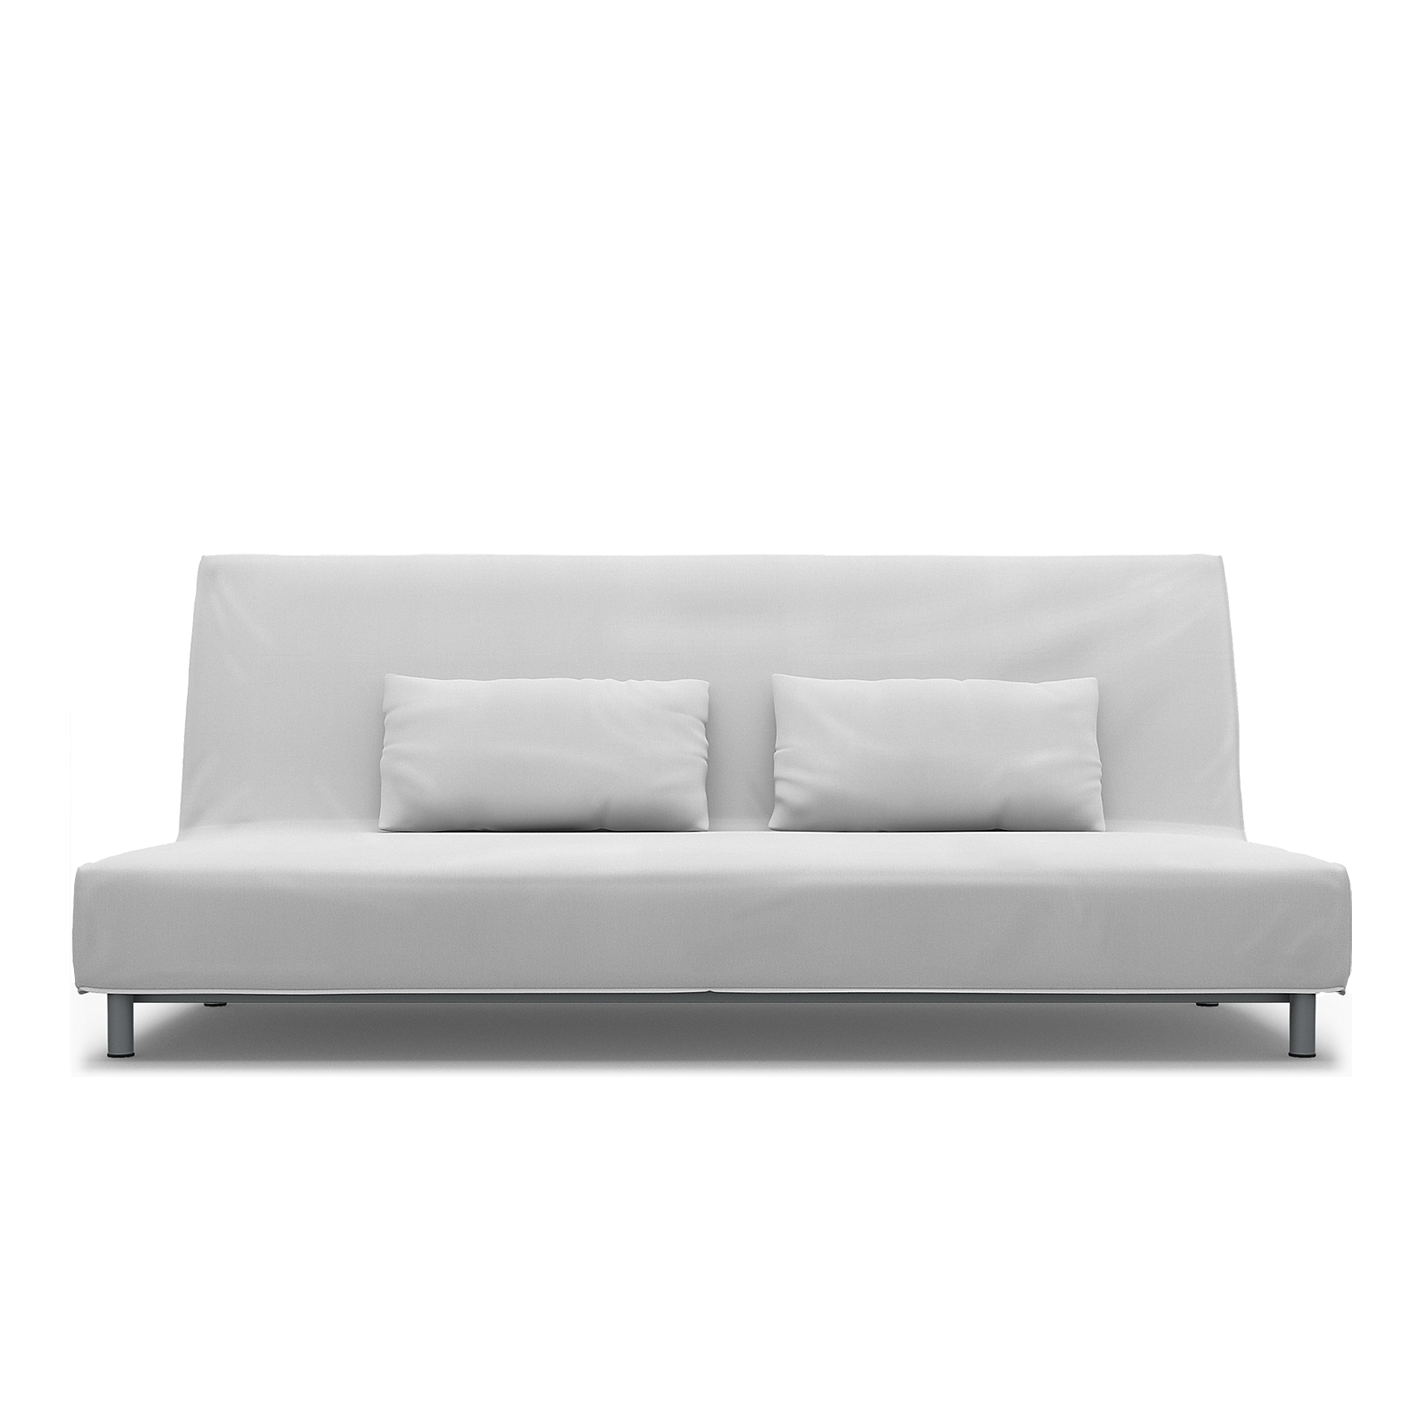 Erstklassige Sofabezüge für IKEA Klippan-Couches - | Bemz